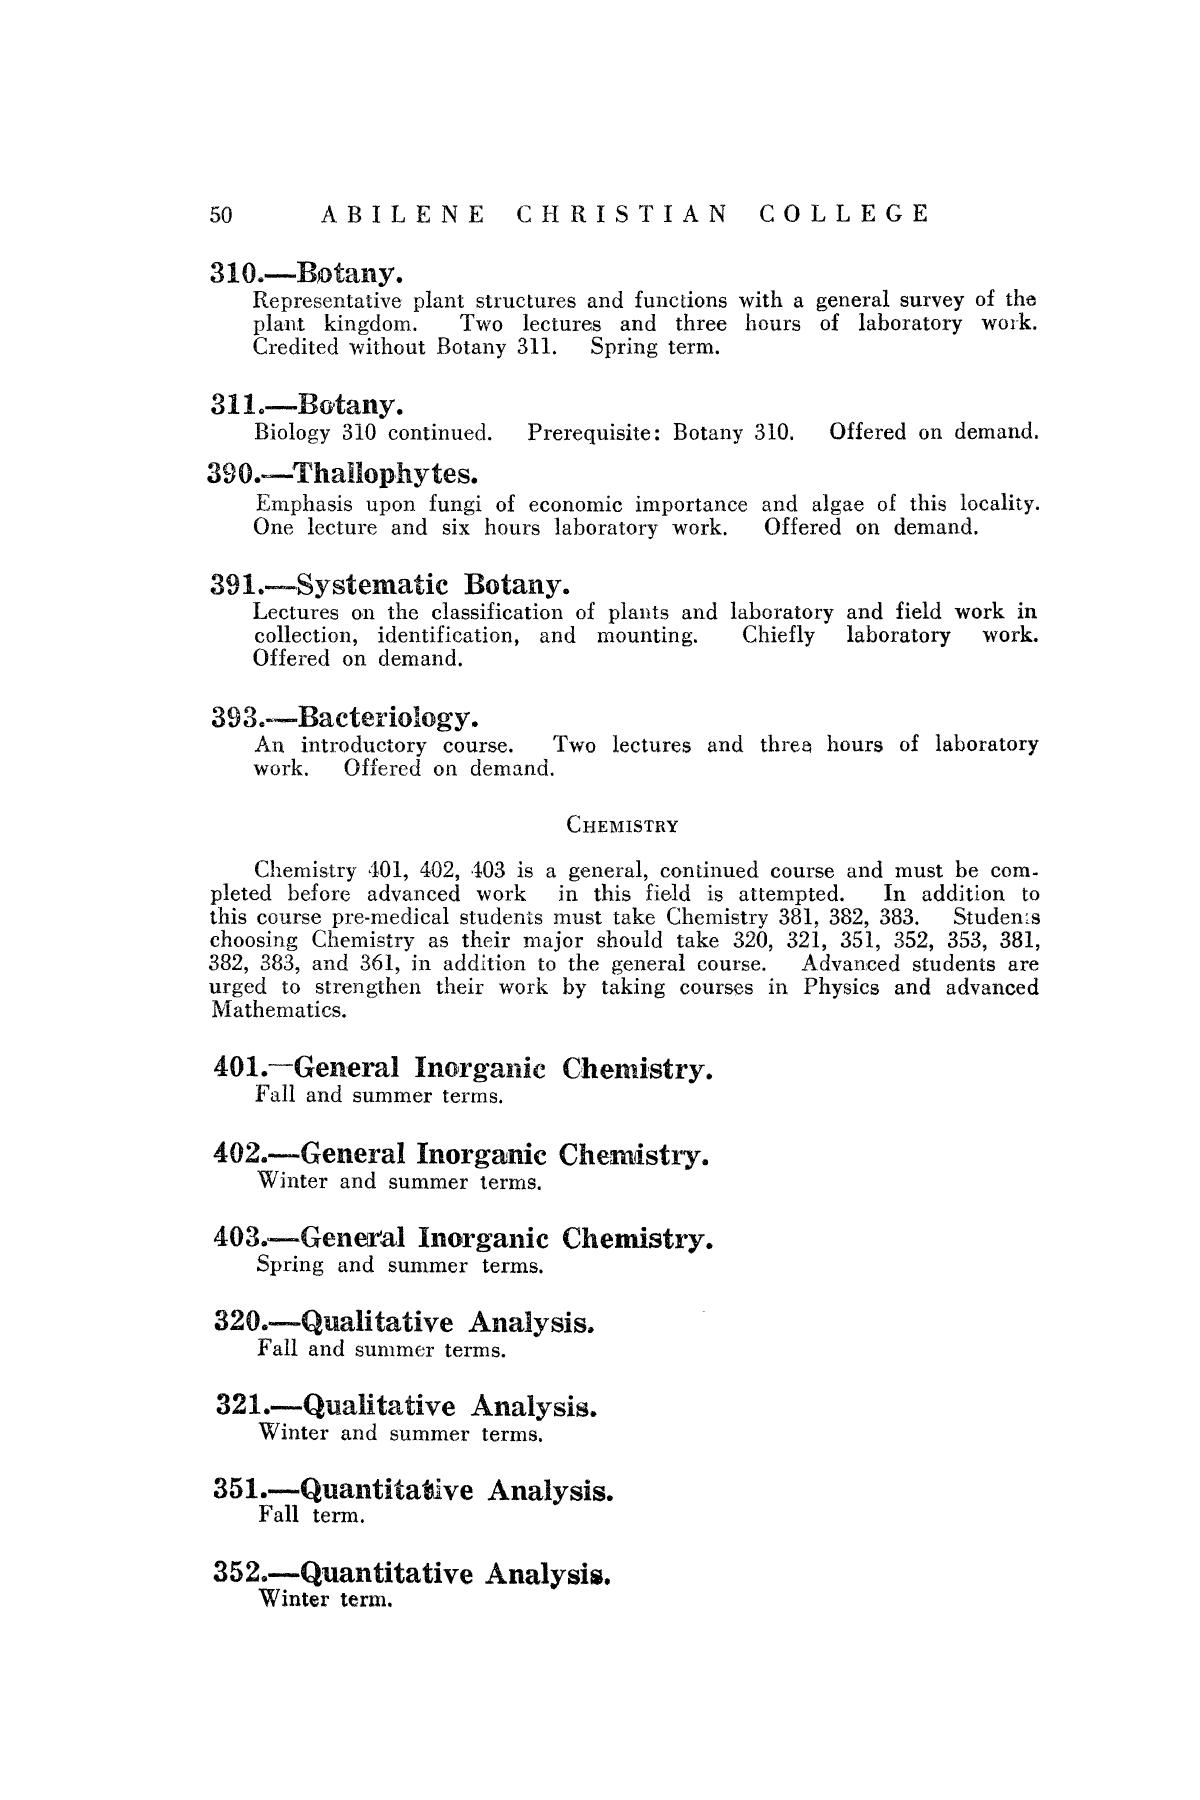 Catalog of Abilene Christian College, 1932-1933
                                                
                                                    50
                                                